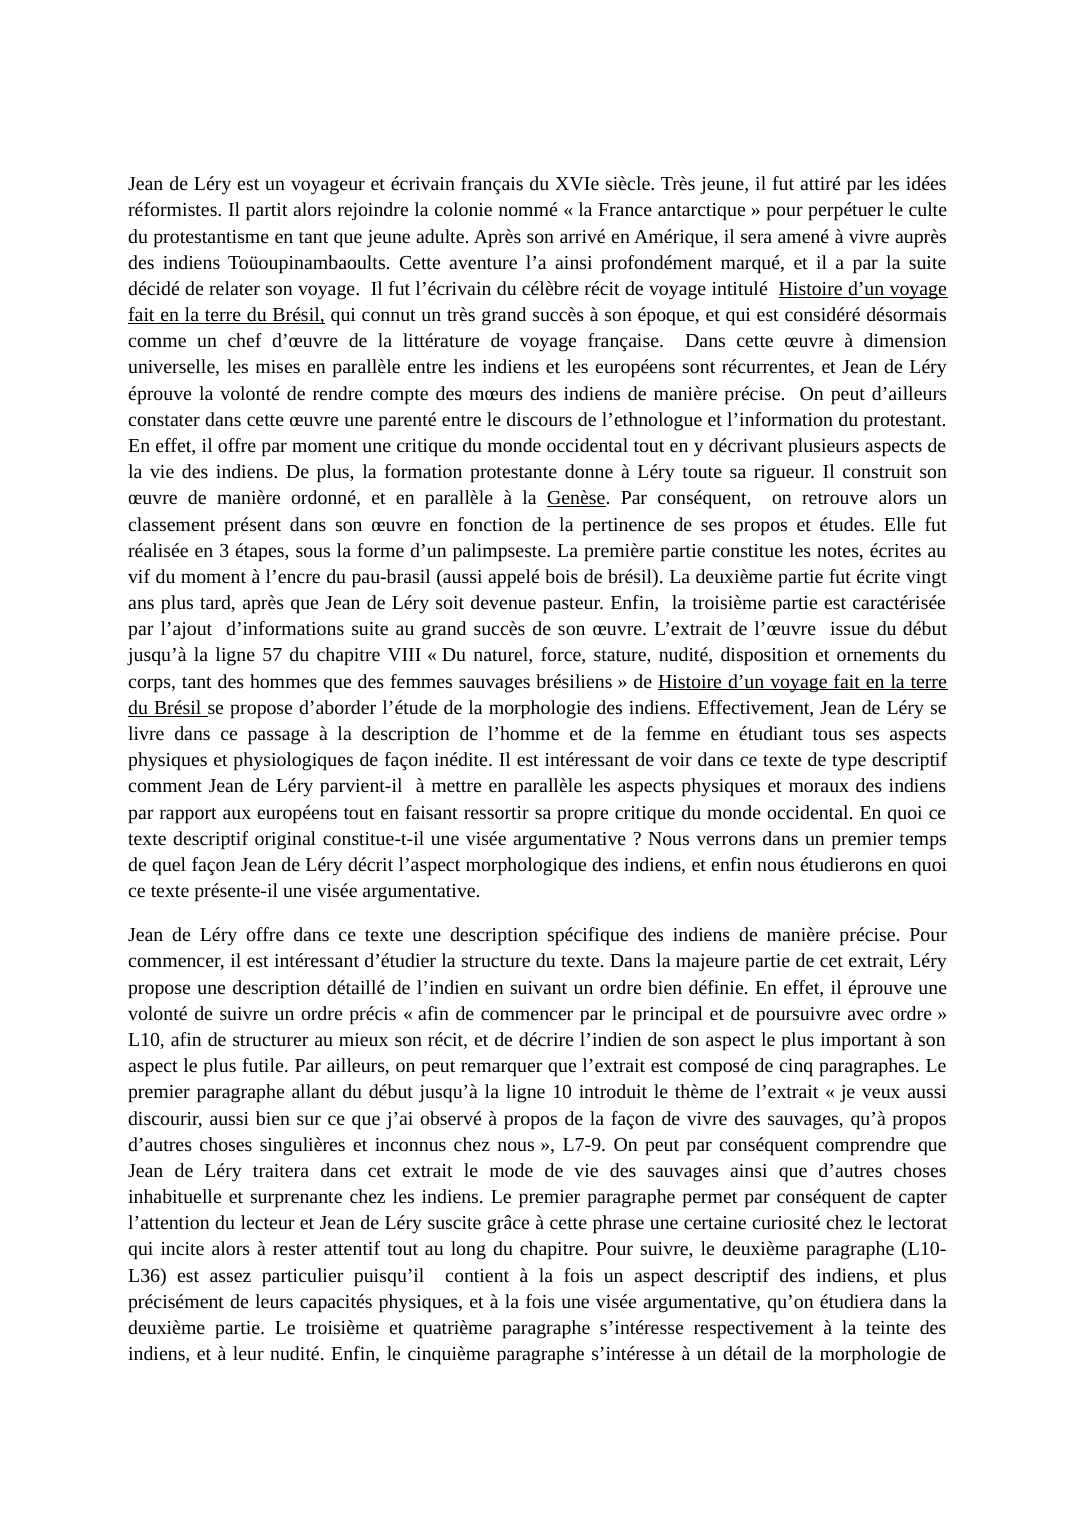 Prévisualisation du document Commentaire composé chapitre VIII "Histoire d'un voyage fait en la terre du brésil" de Jean de Léry